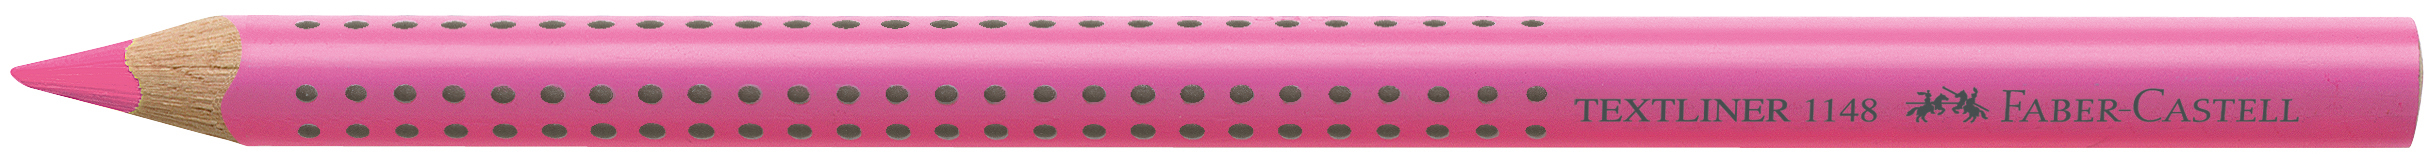 FABER-CASTELL Textliner Jumbo Grip 5mm 114828 rose rose